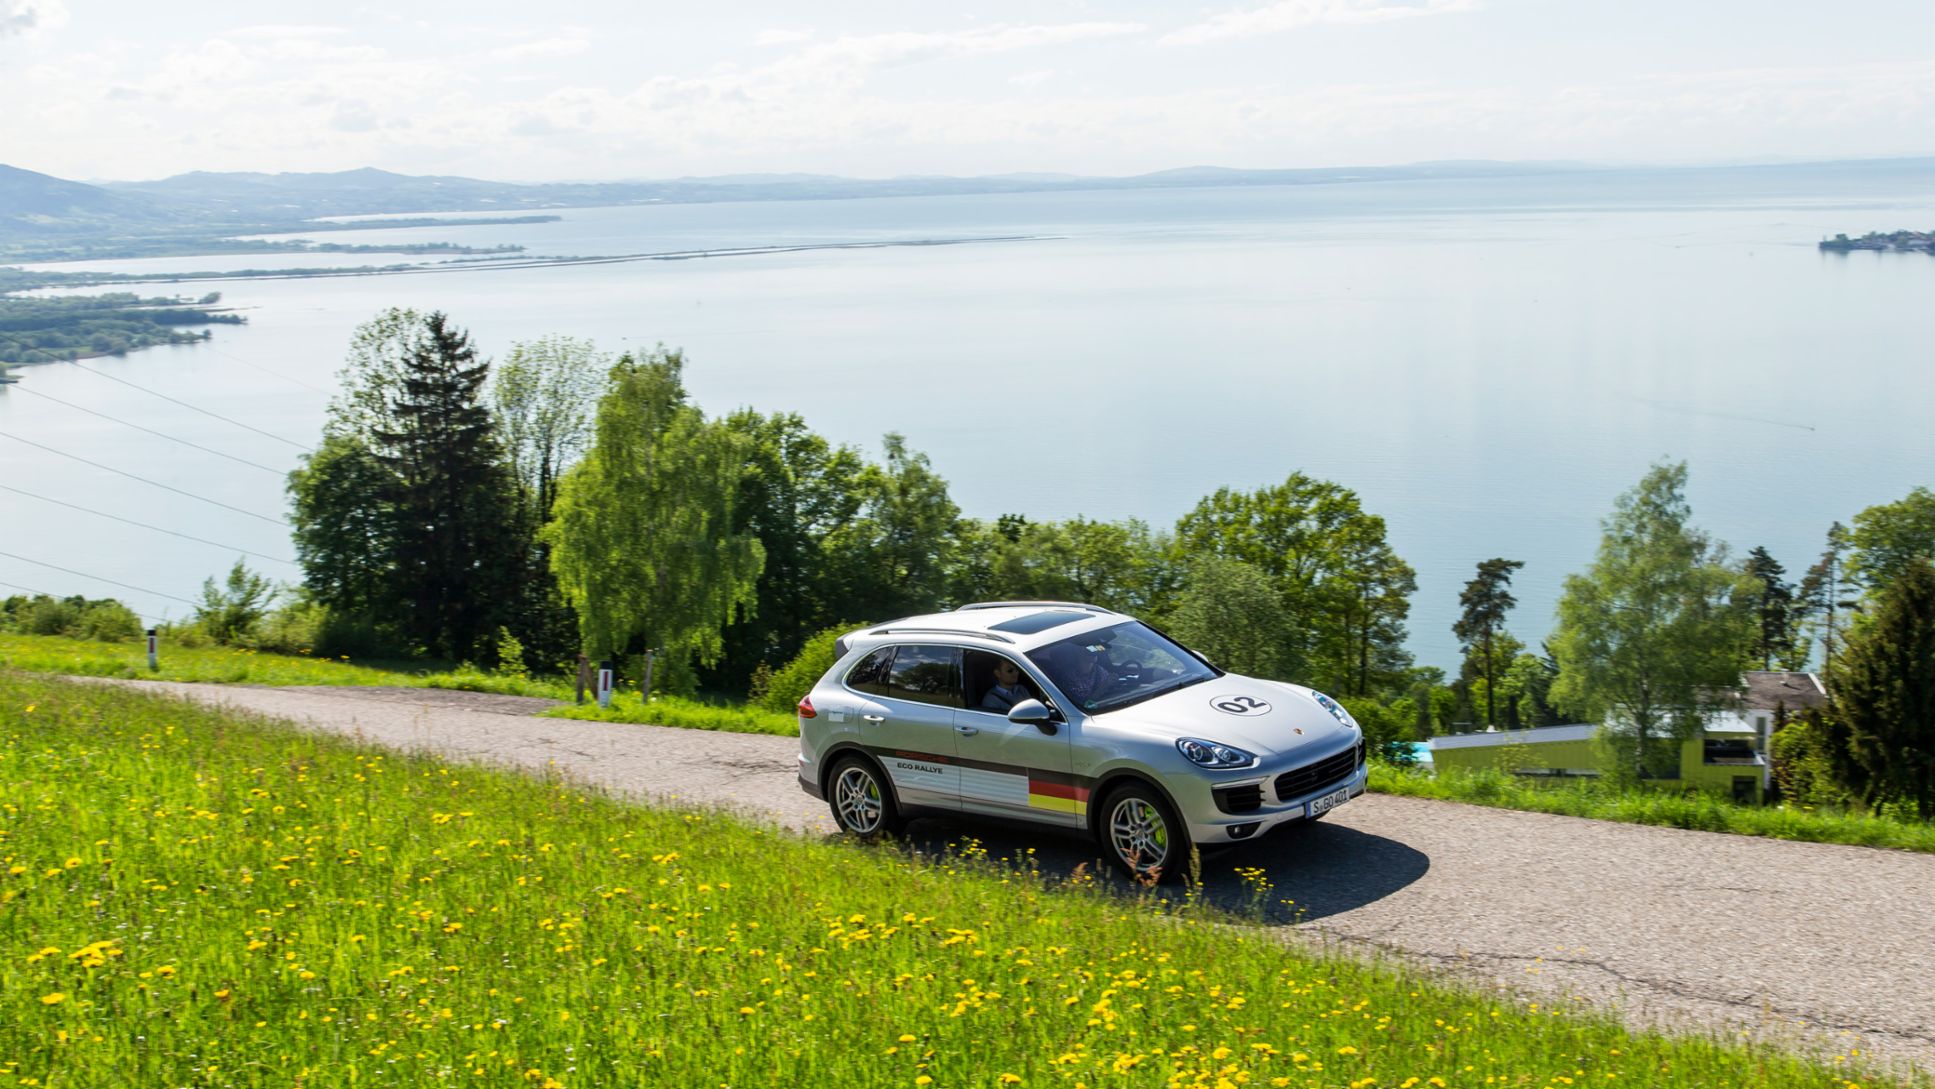 Cayenne S E-Hybrid, Eco-Rallye Bodensee, 2015, Porsche AG